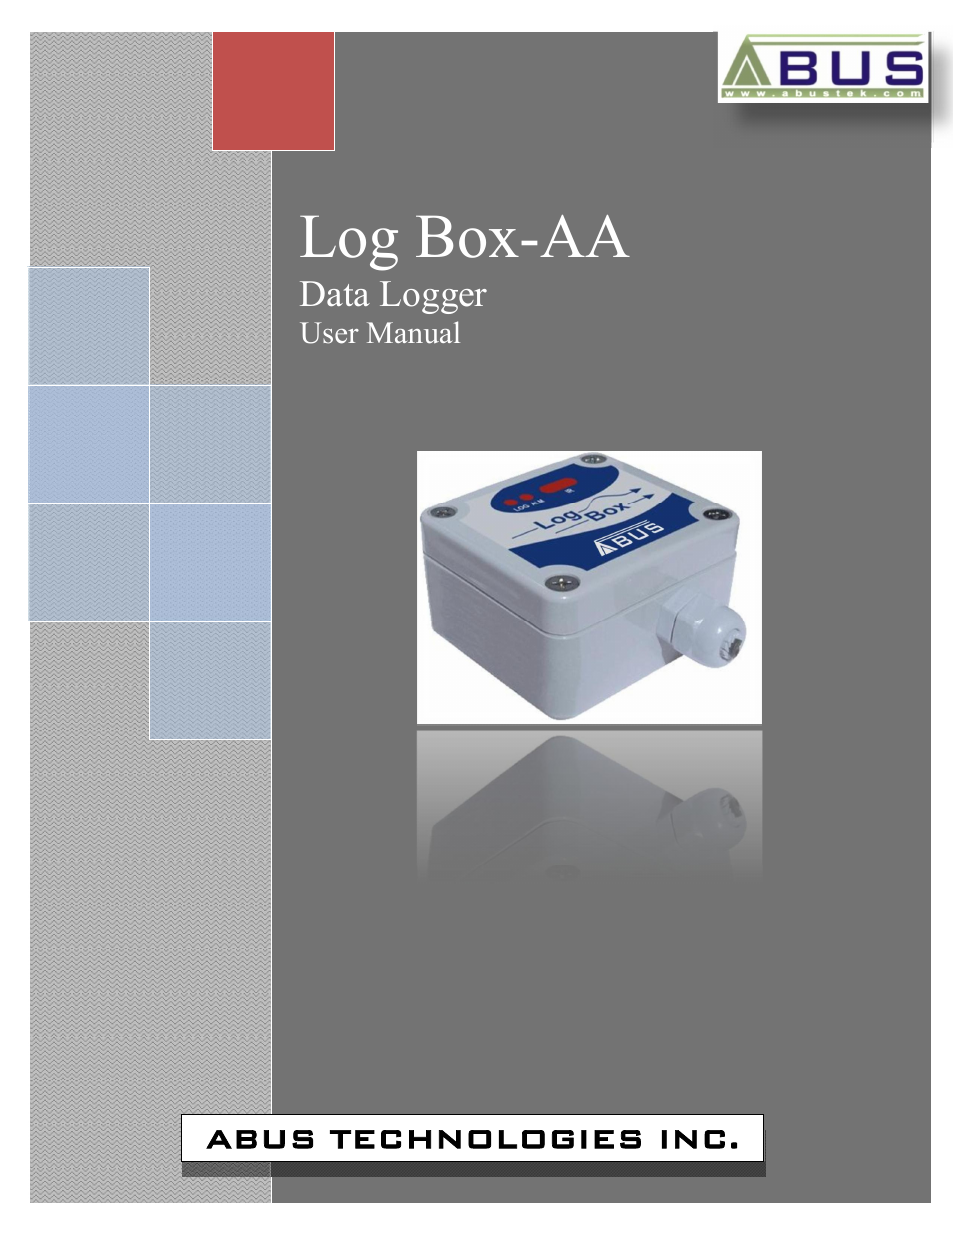 Log Box-AA Data Logger